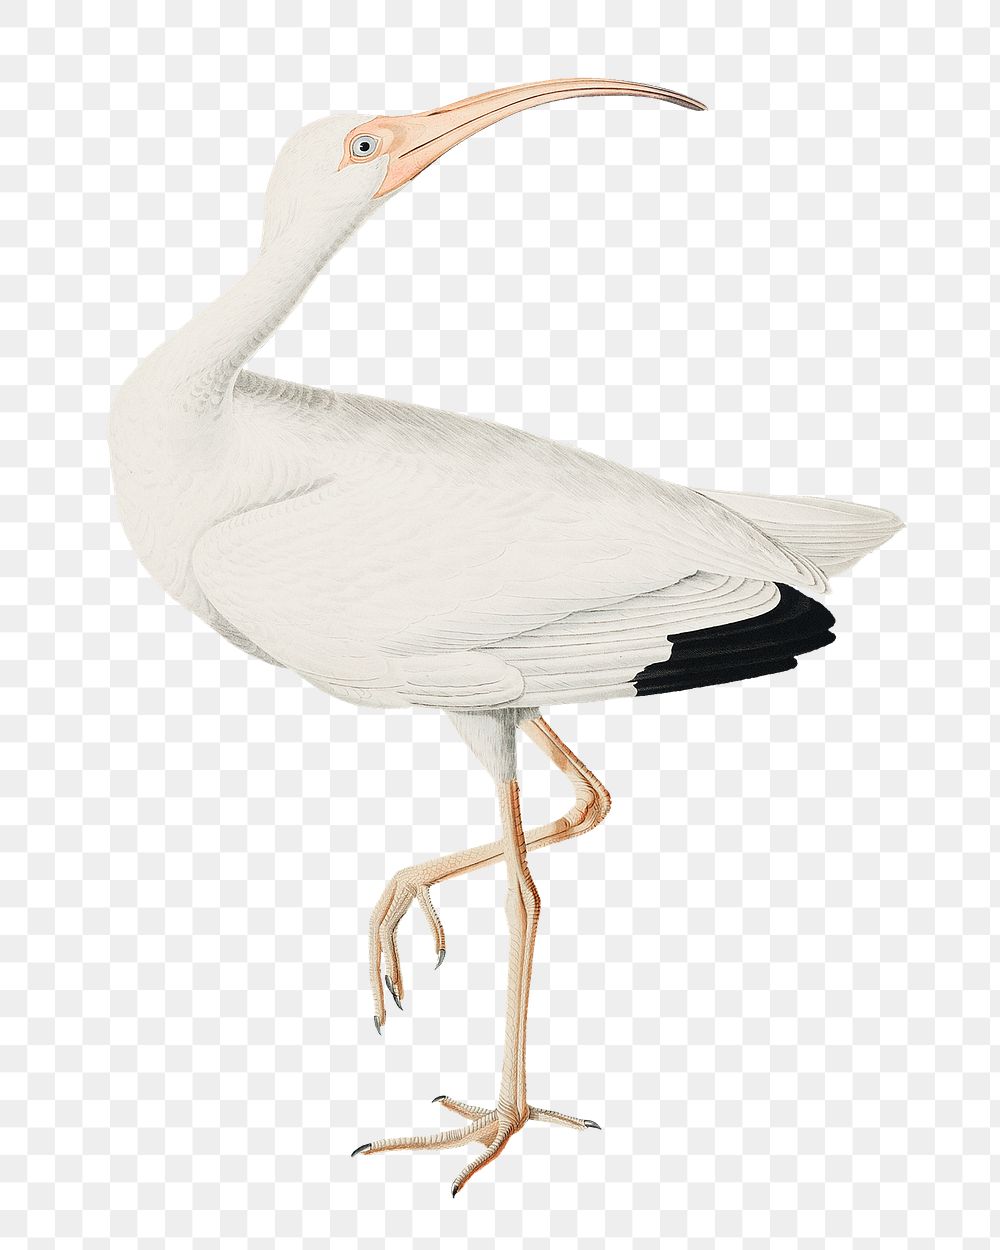 White ibis png bird sticker, transparent background